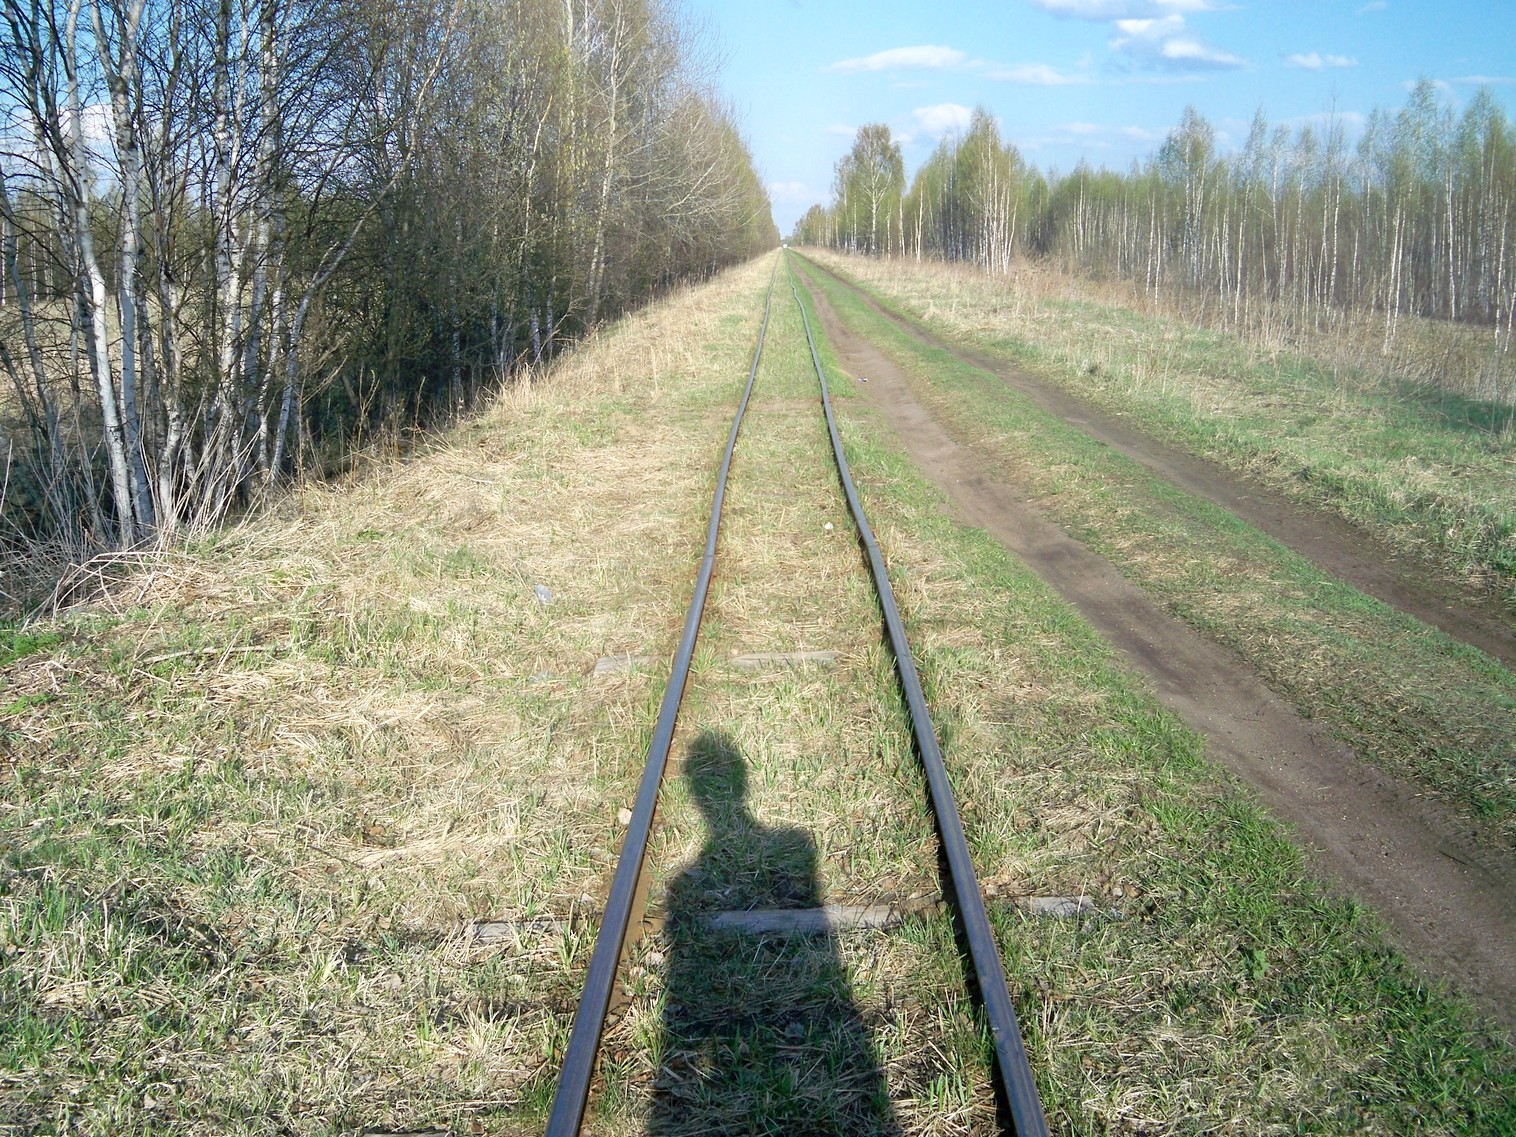 Узкоколейная железная дорога Васильевского предприятия промышленного железнодорожного транспорта  — фотографии, сделанные в 2014 году (часть 9)